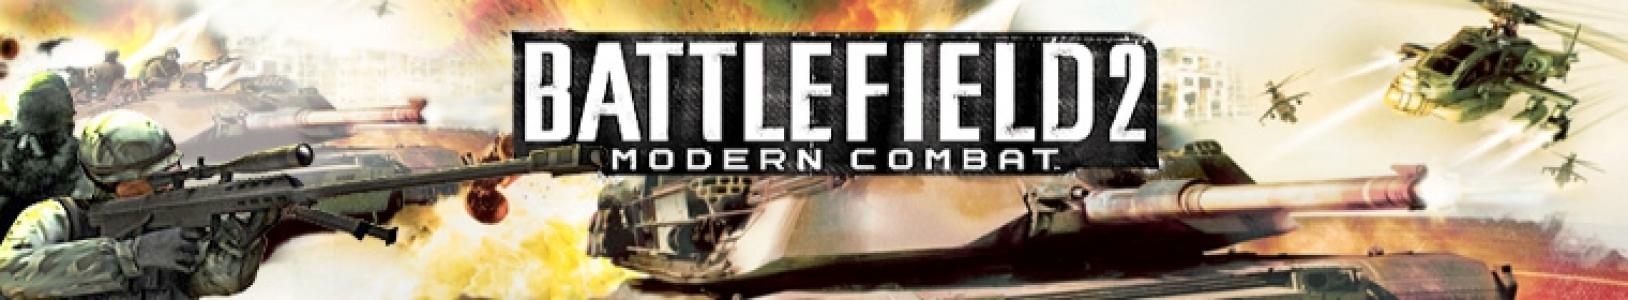 Battlefield 2: Modern Combat banner